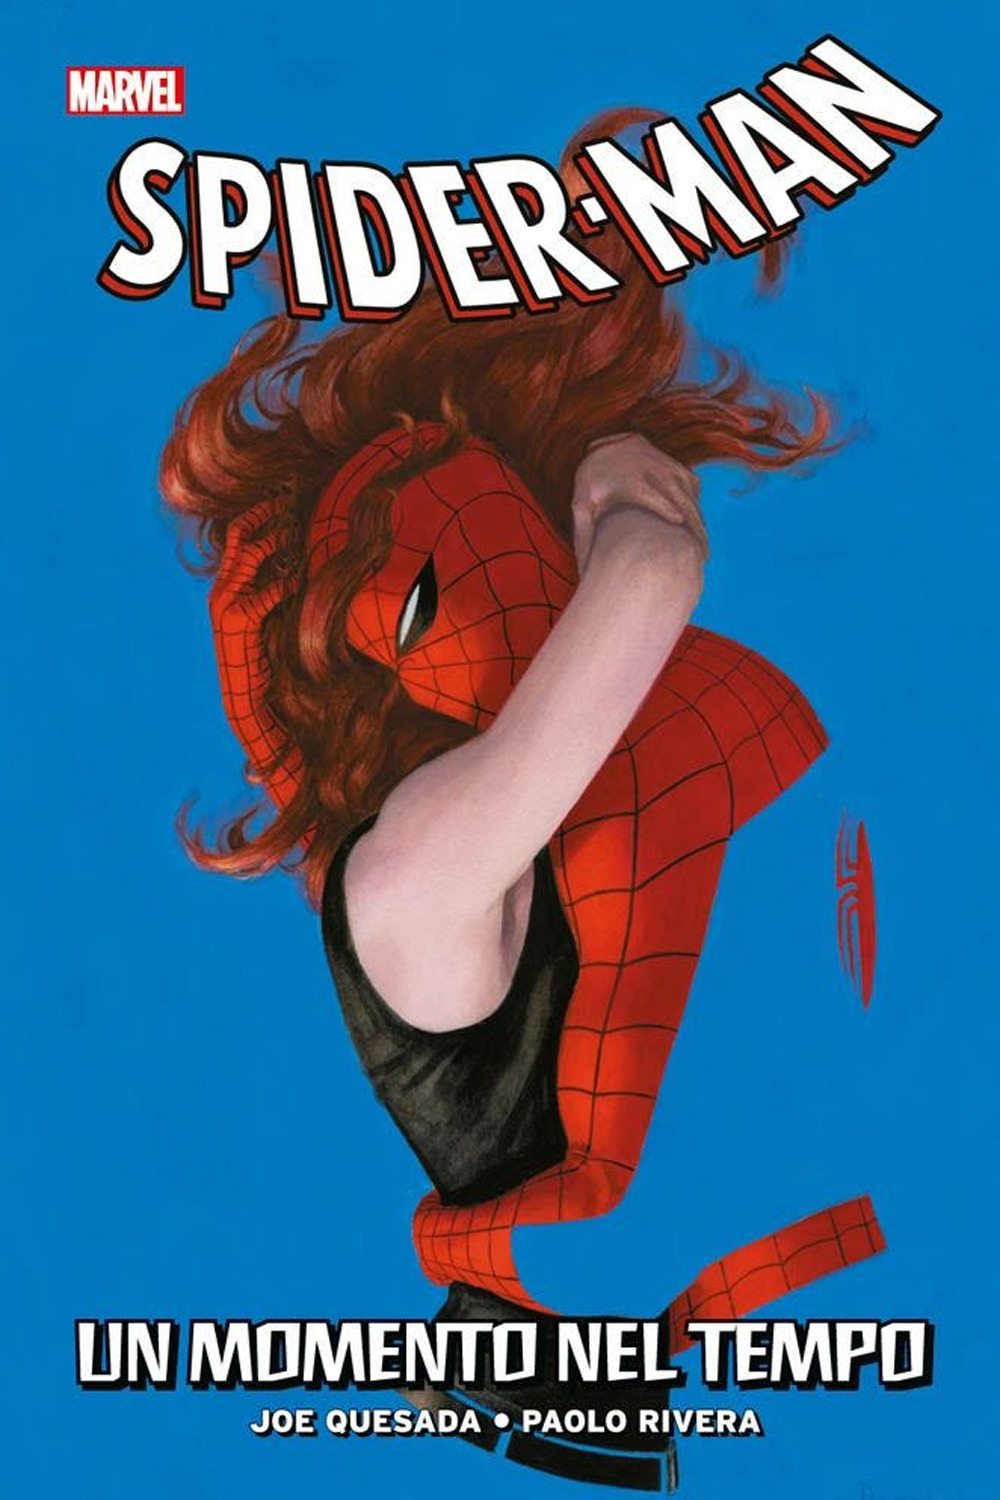 Image of Smascherato. Spider-Man. Vol. 4: momento nel tempo, Un.